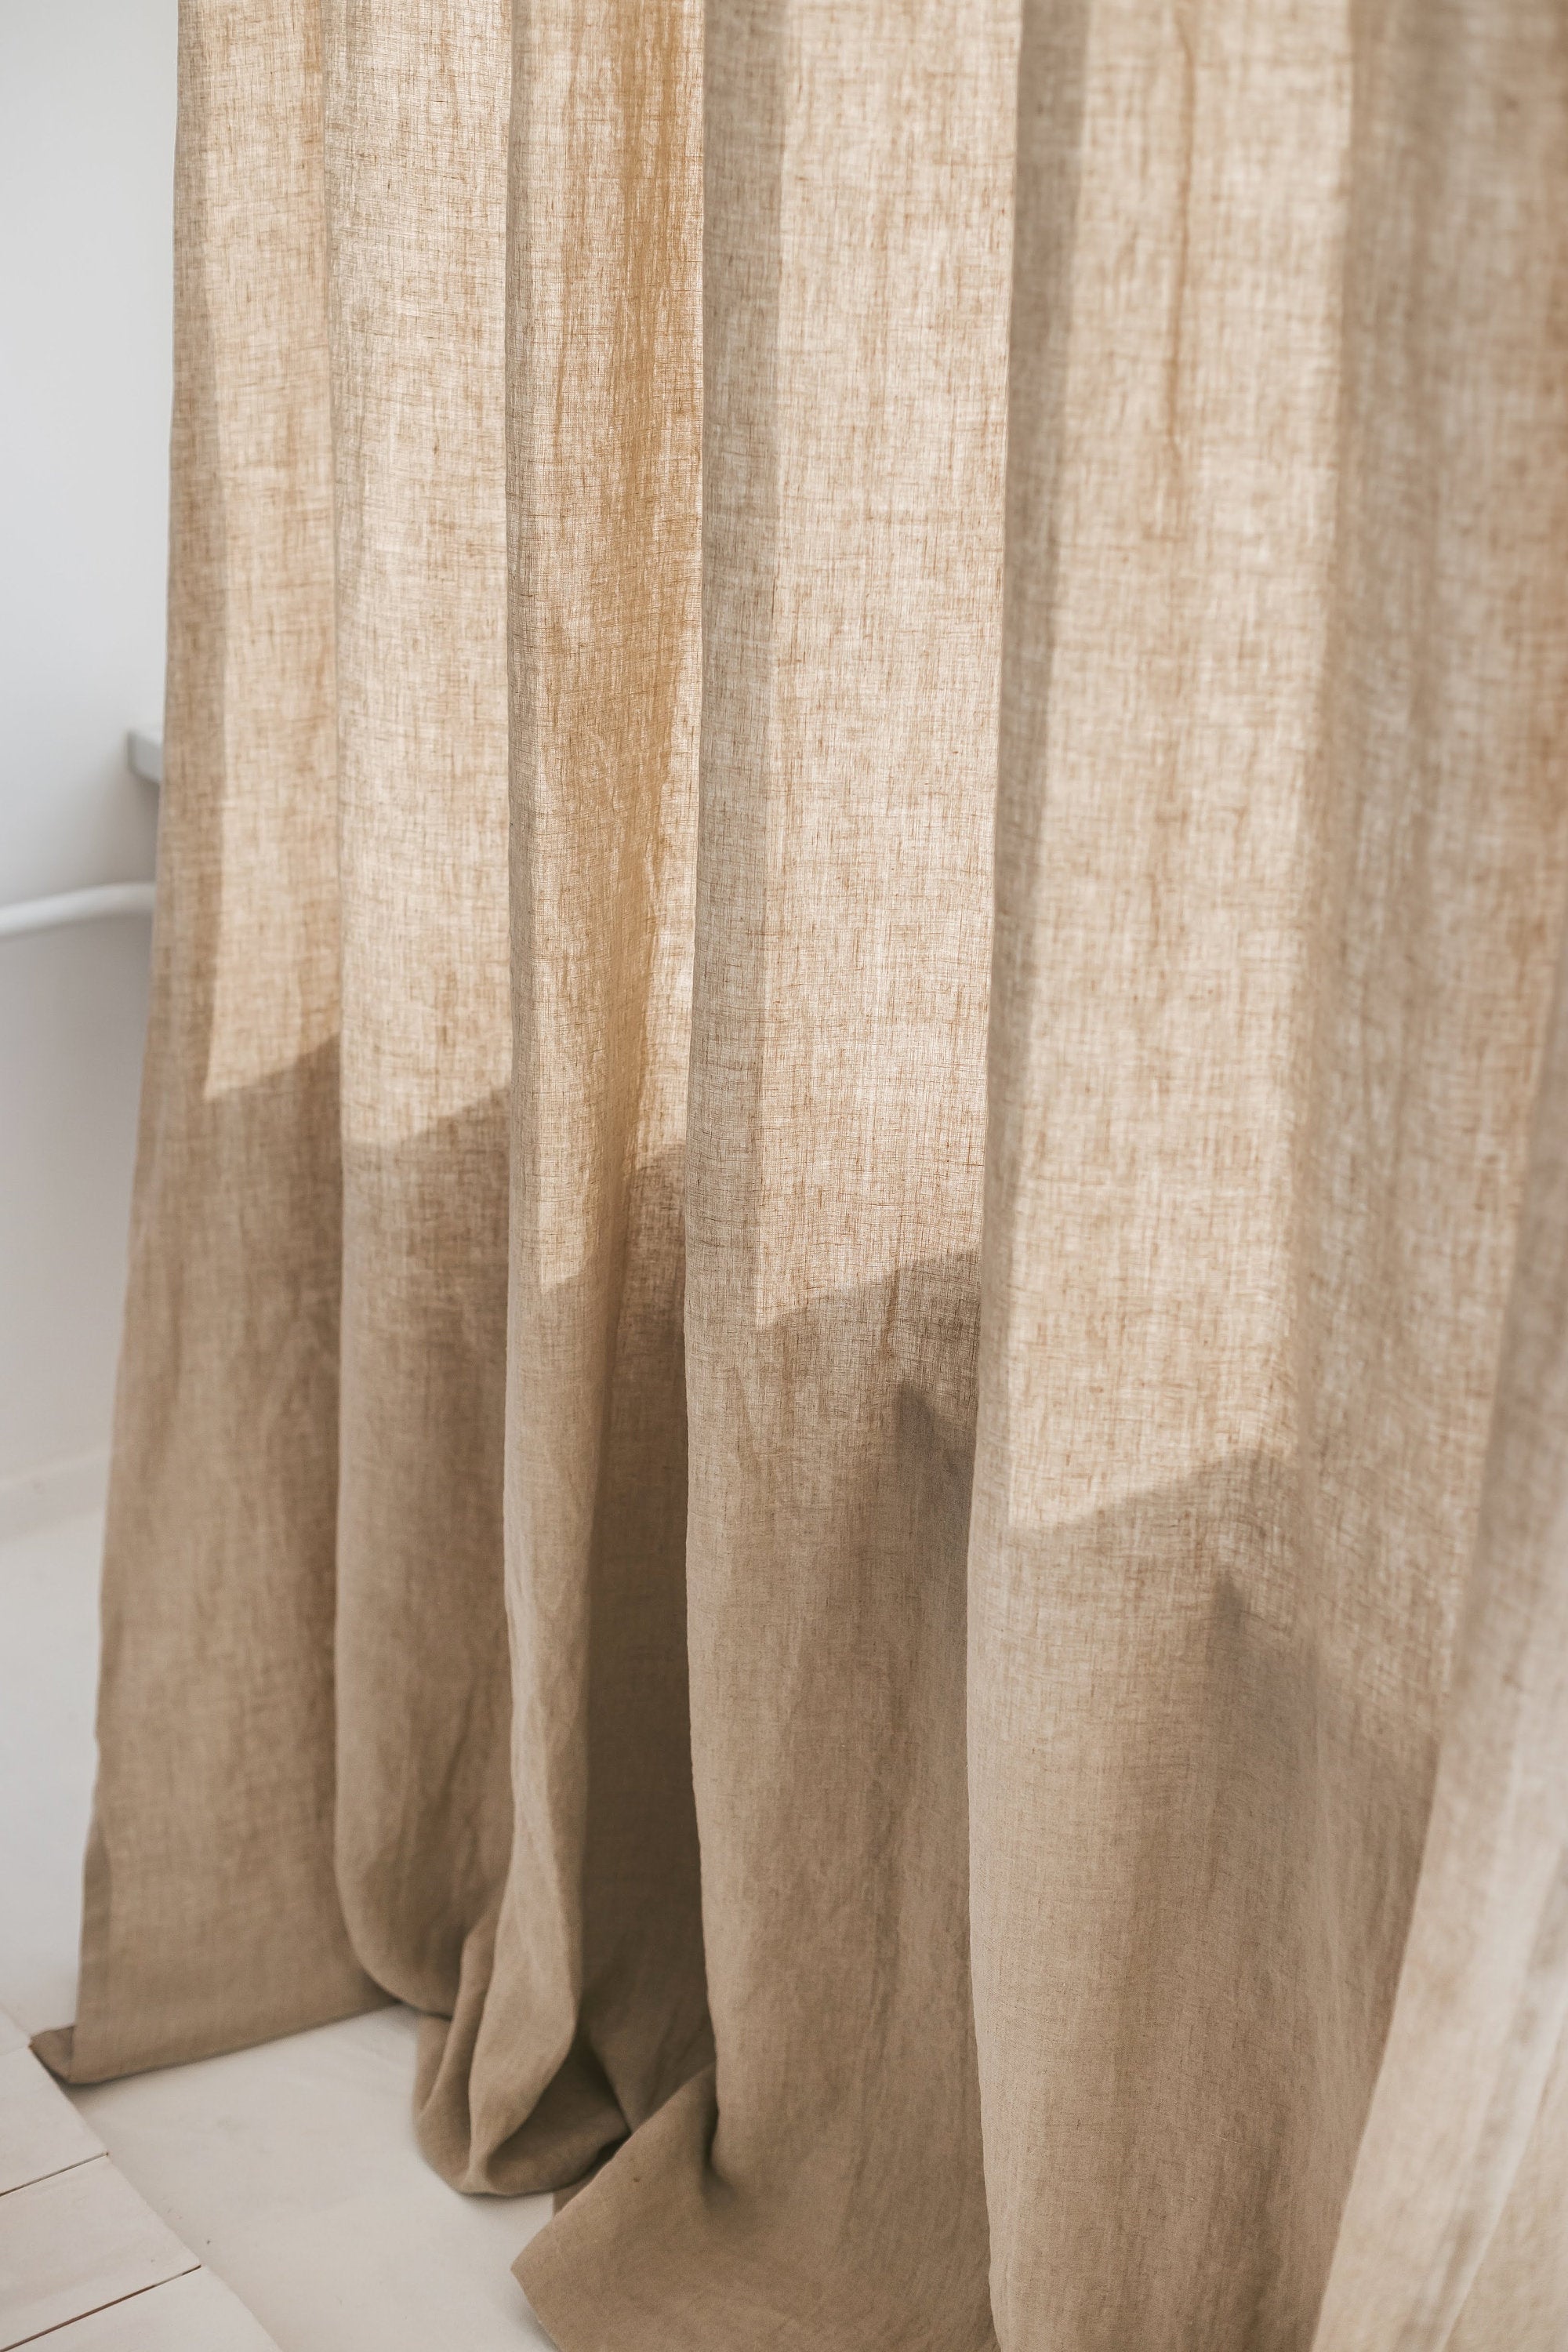 86.6/220 Cm Width Linen Curtain – Sand Snow Linen